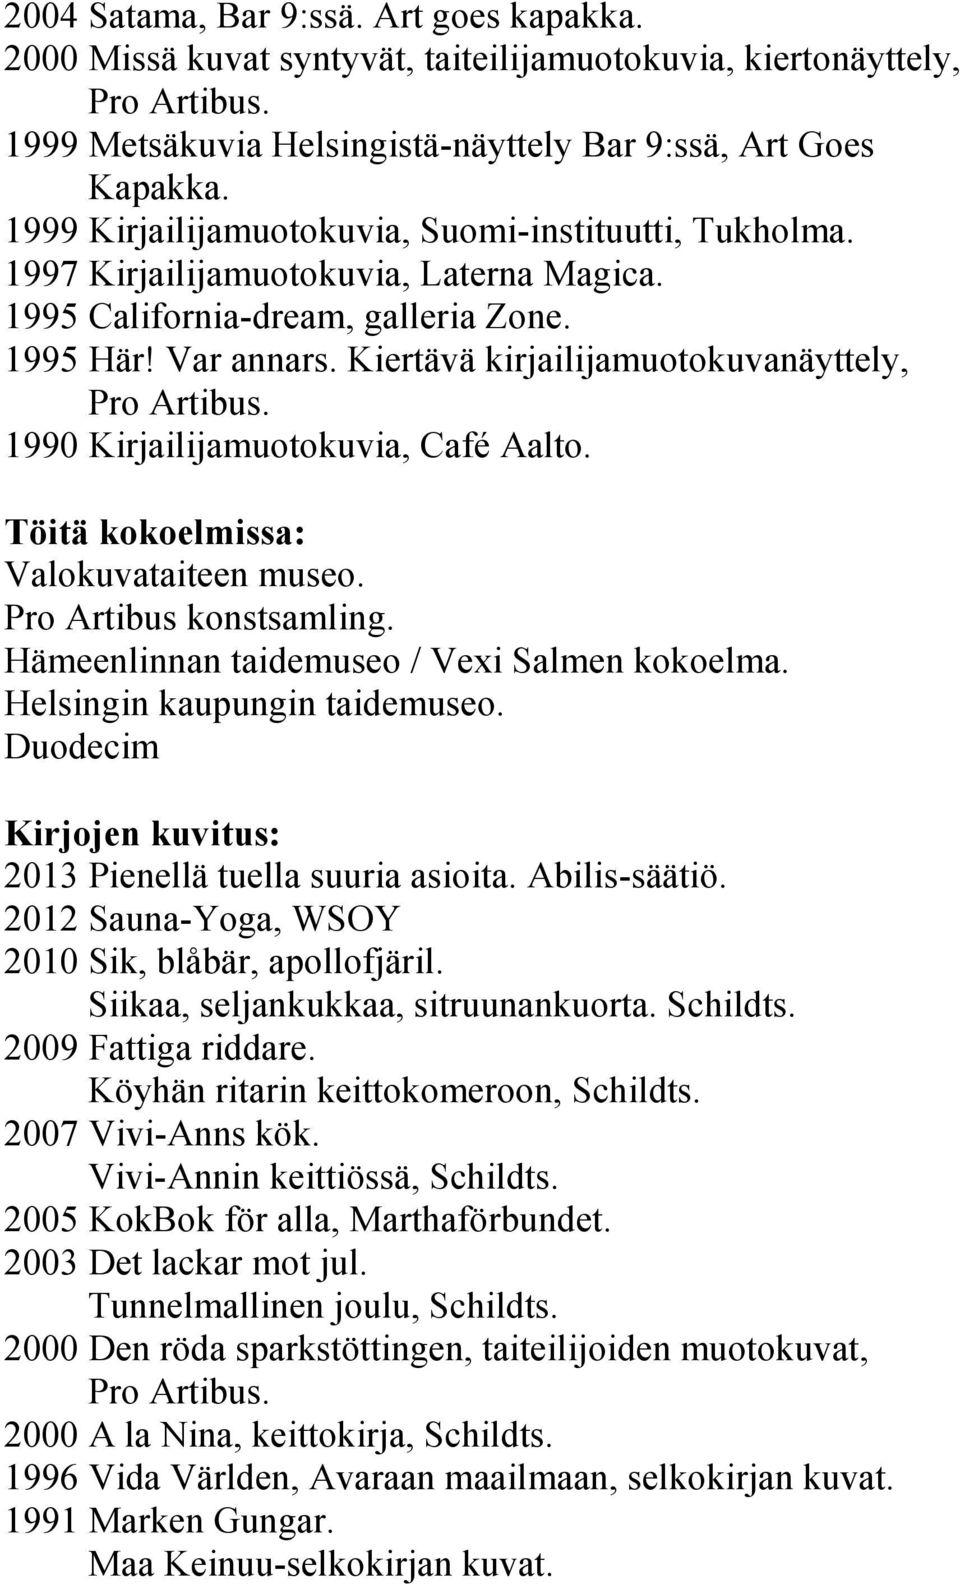 Kiertävä kirjailijamuotokuvanäyttely, 1990 Kirjailijamuotokuvia, Café Aalto. Töitä kokoelmissa: Valokuvataiteen museo. Pro Artibus konstsamling. Hämeenlinnan taidemuseo / Vexi Salmen kokoelma.